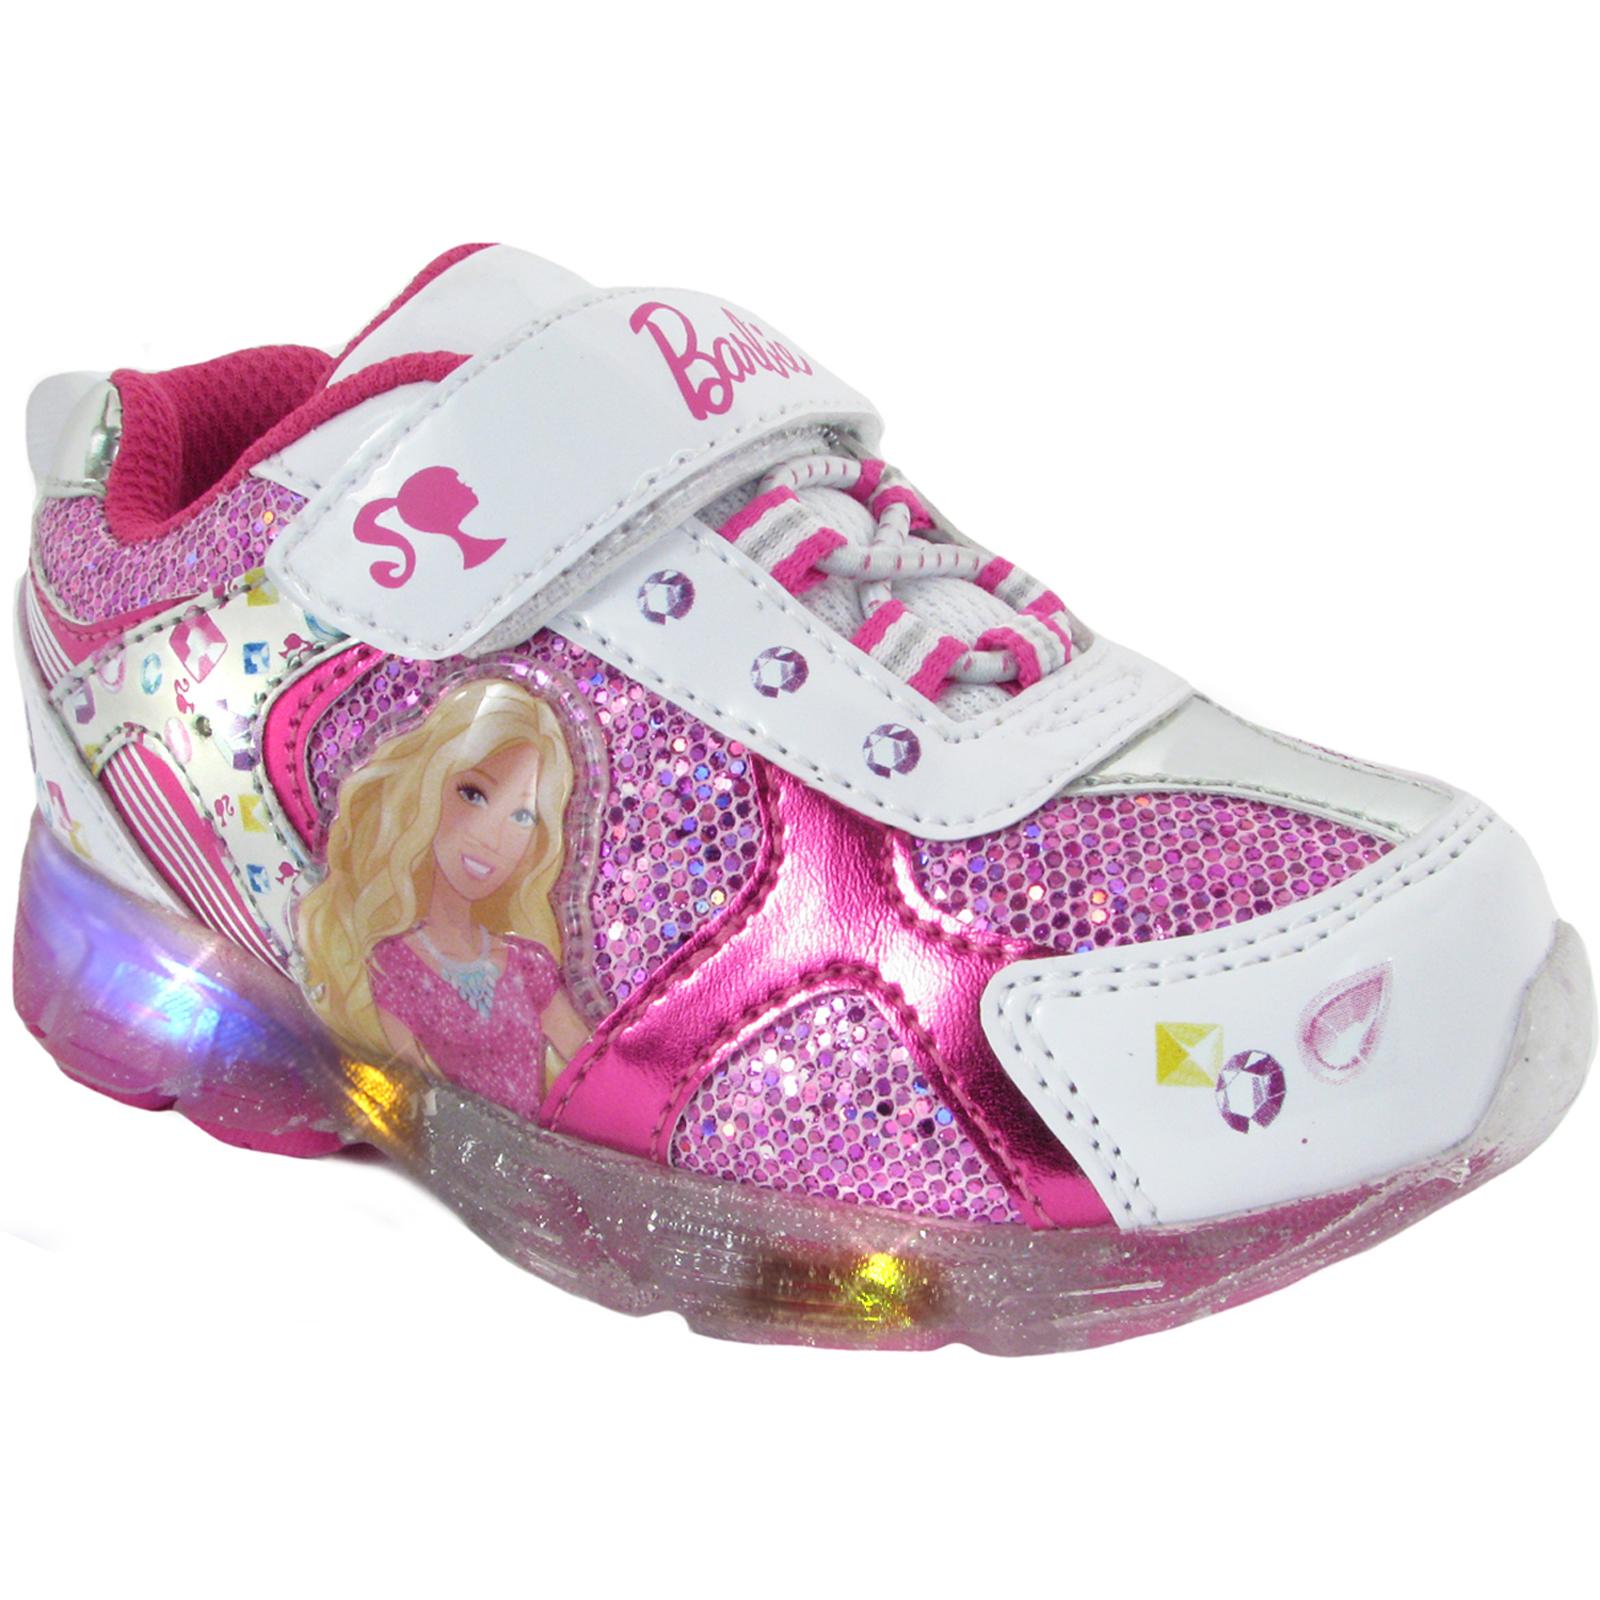 Mattel Barbie Toddler Girl's Pink/Silver/White Light-Up Sneaker